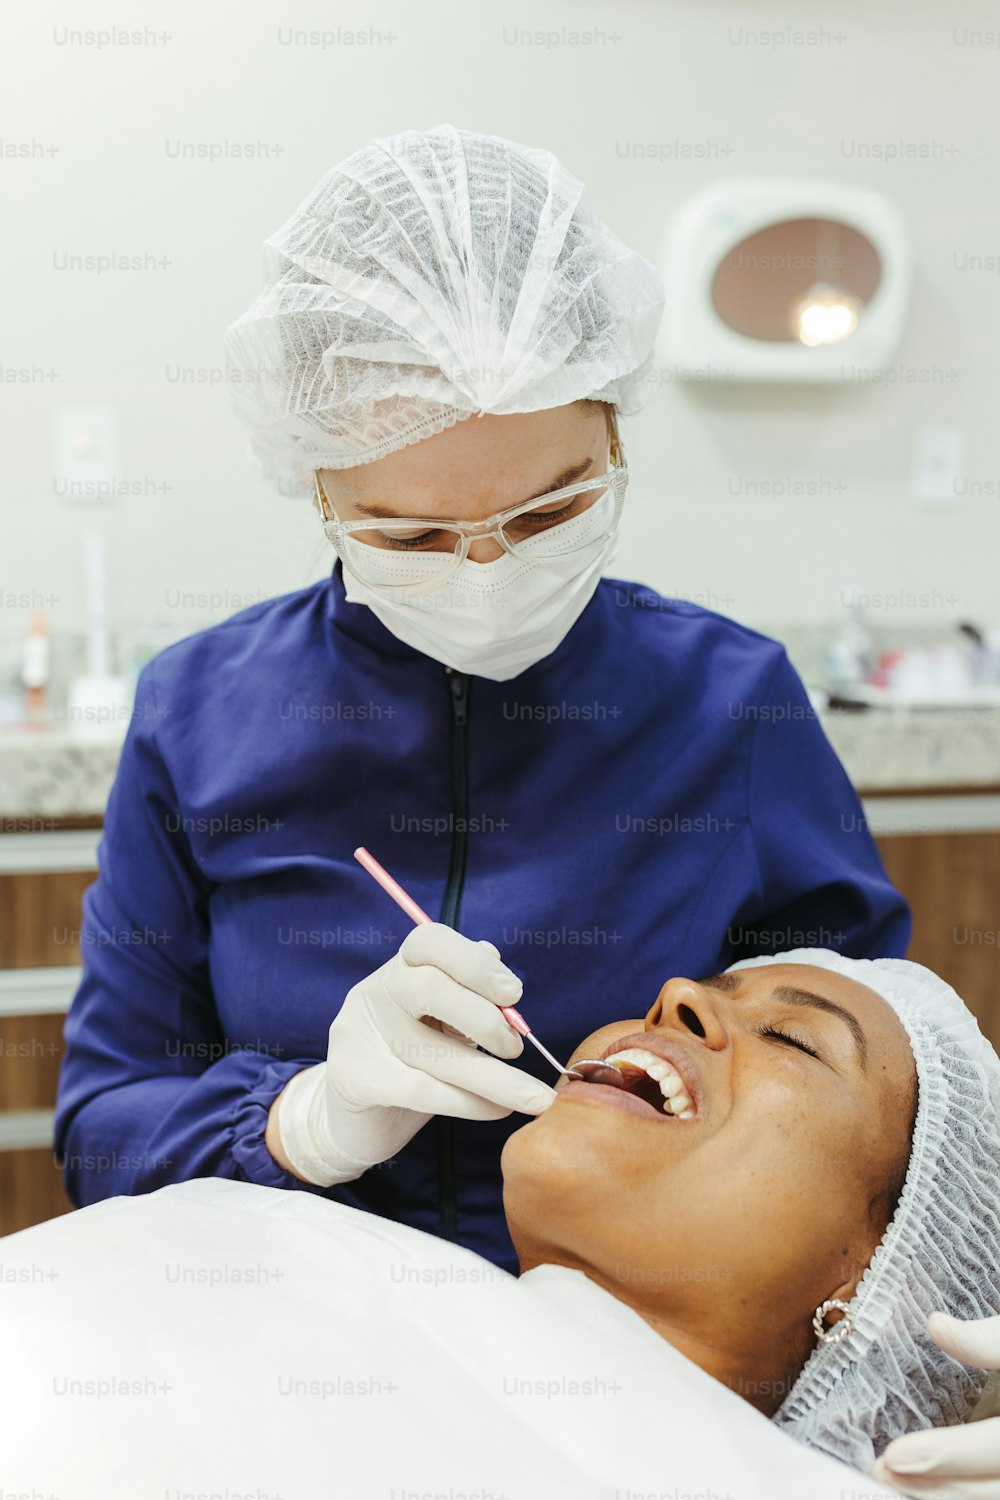 歯科医に歯のチェックを受ける女性